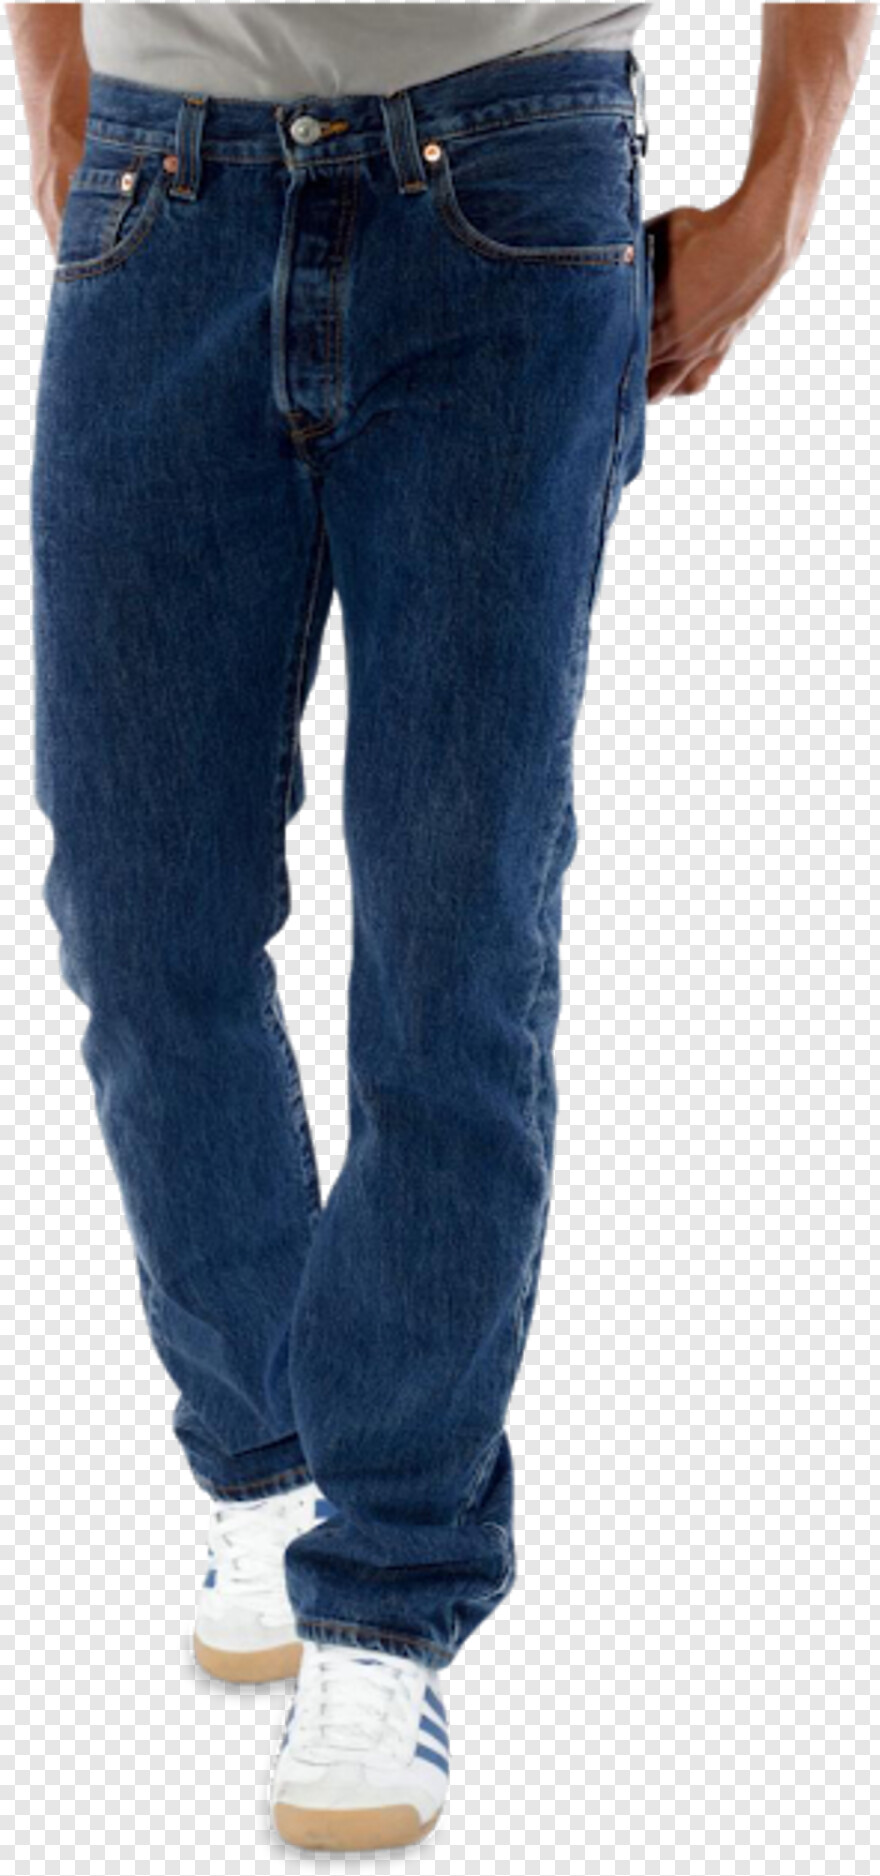 jeans-pant # 521670